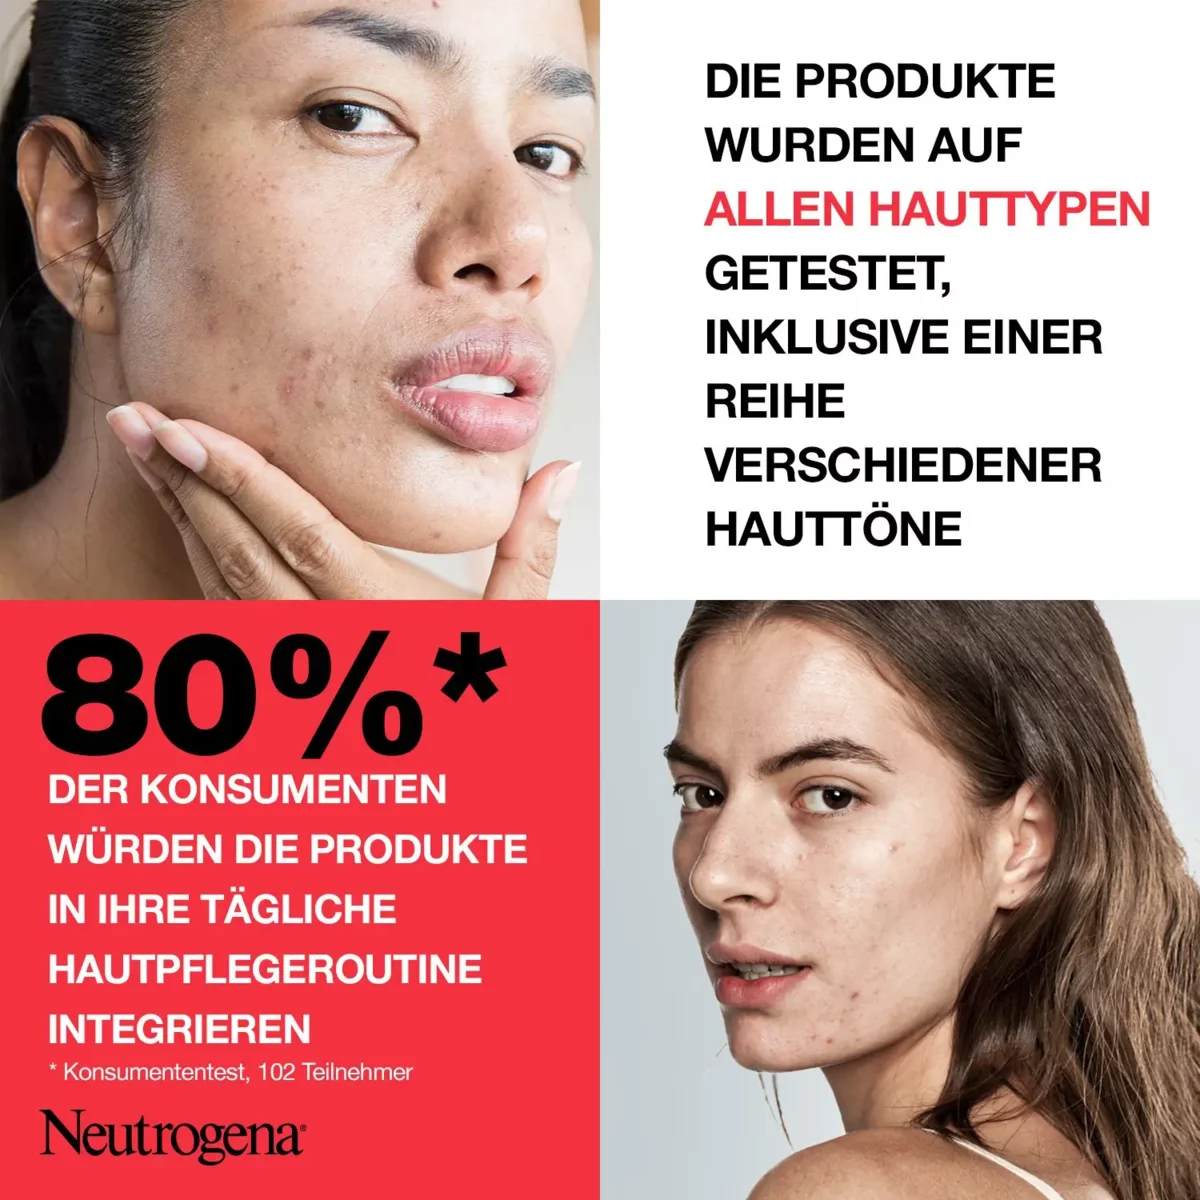 80% der Konsumenten würden die Produkte in ihre tägliche Hautpflege-Routine integrieren. Nach einem Konsumententest mit 102 Teilnehmern.